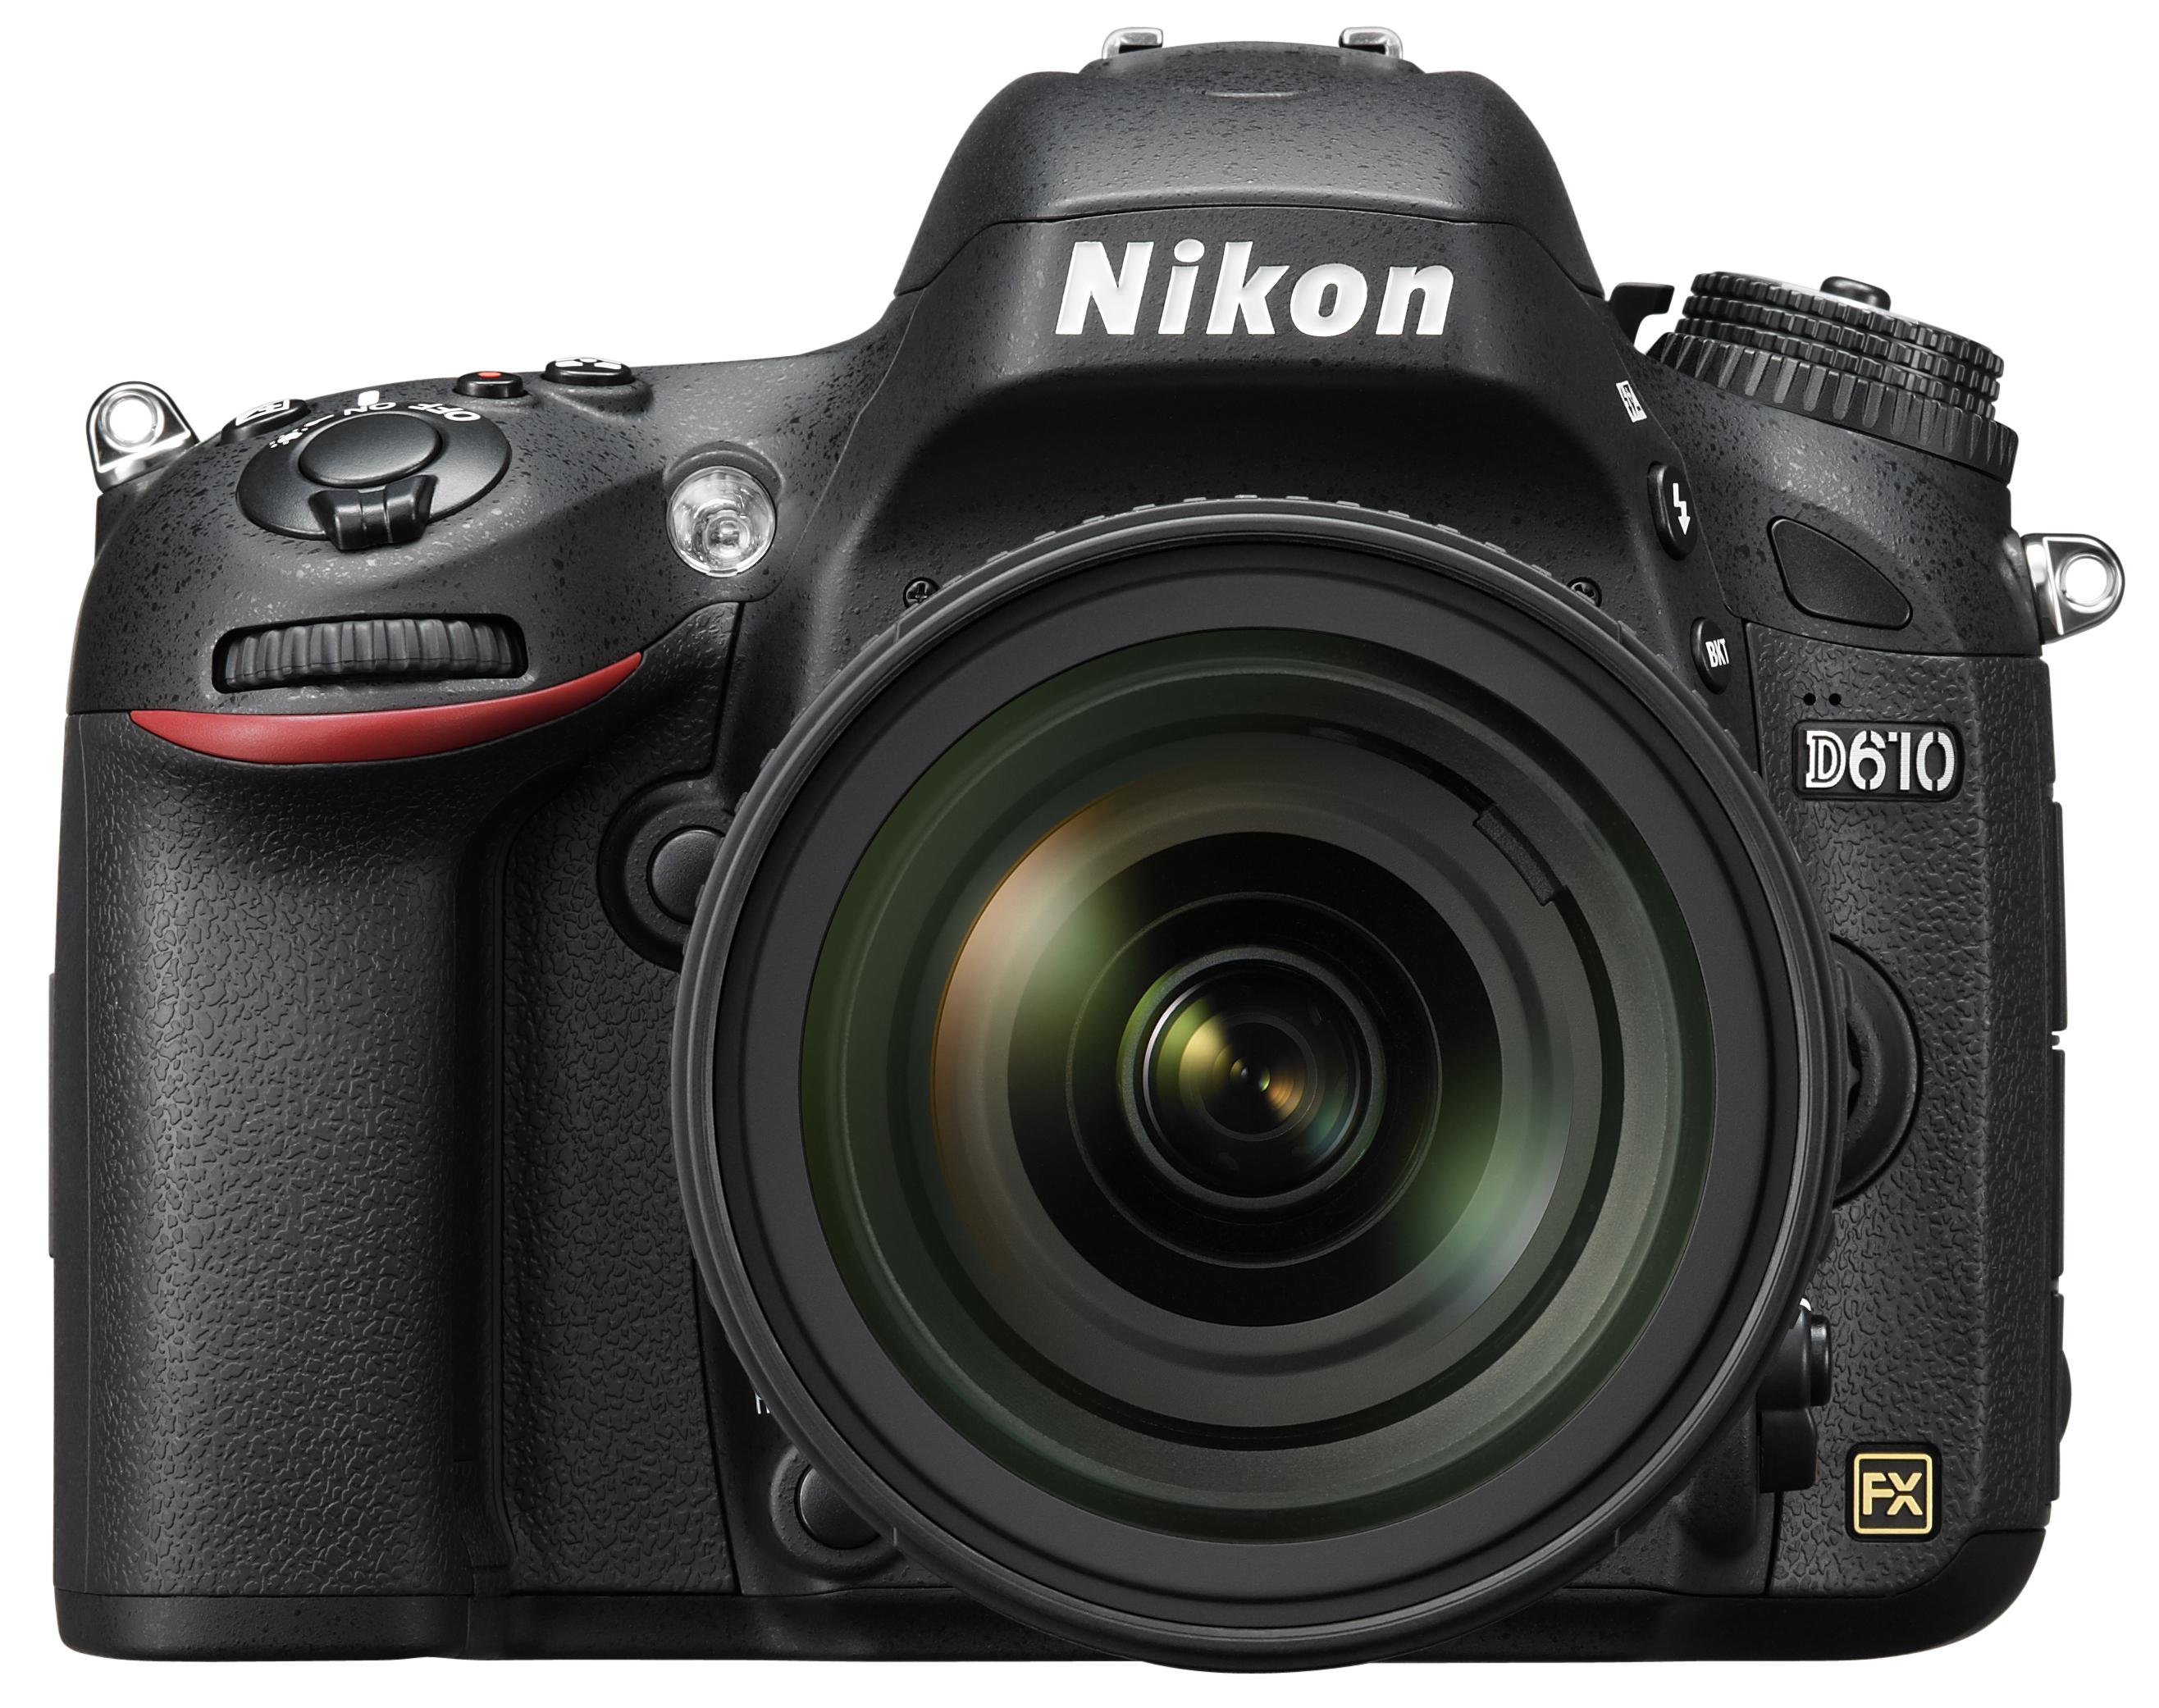 Nikon D610 er Nikons inngangskamera til fullformatverdenen. Foto: Nikon